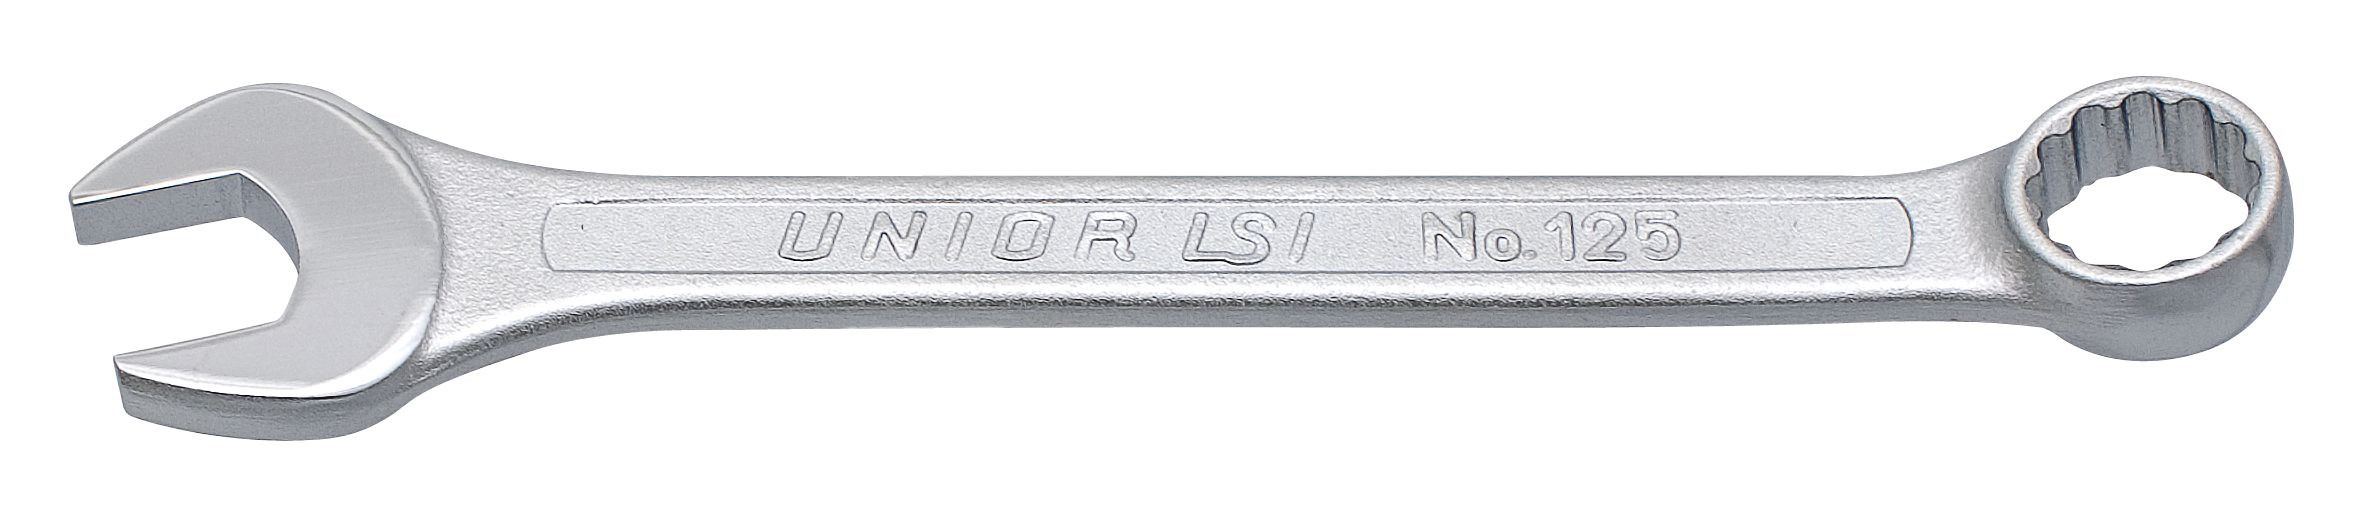 Κλειδιά Γερμανοπολύγωνα Κοντά Unior 125/1 (inch)